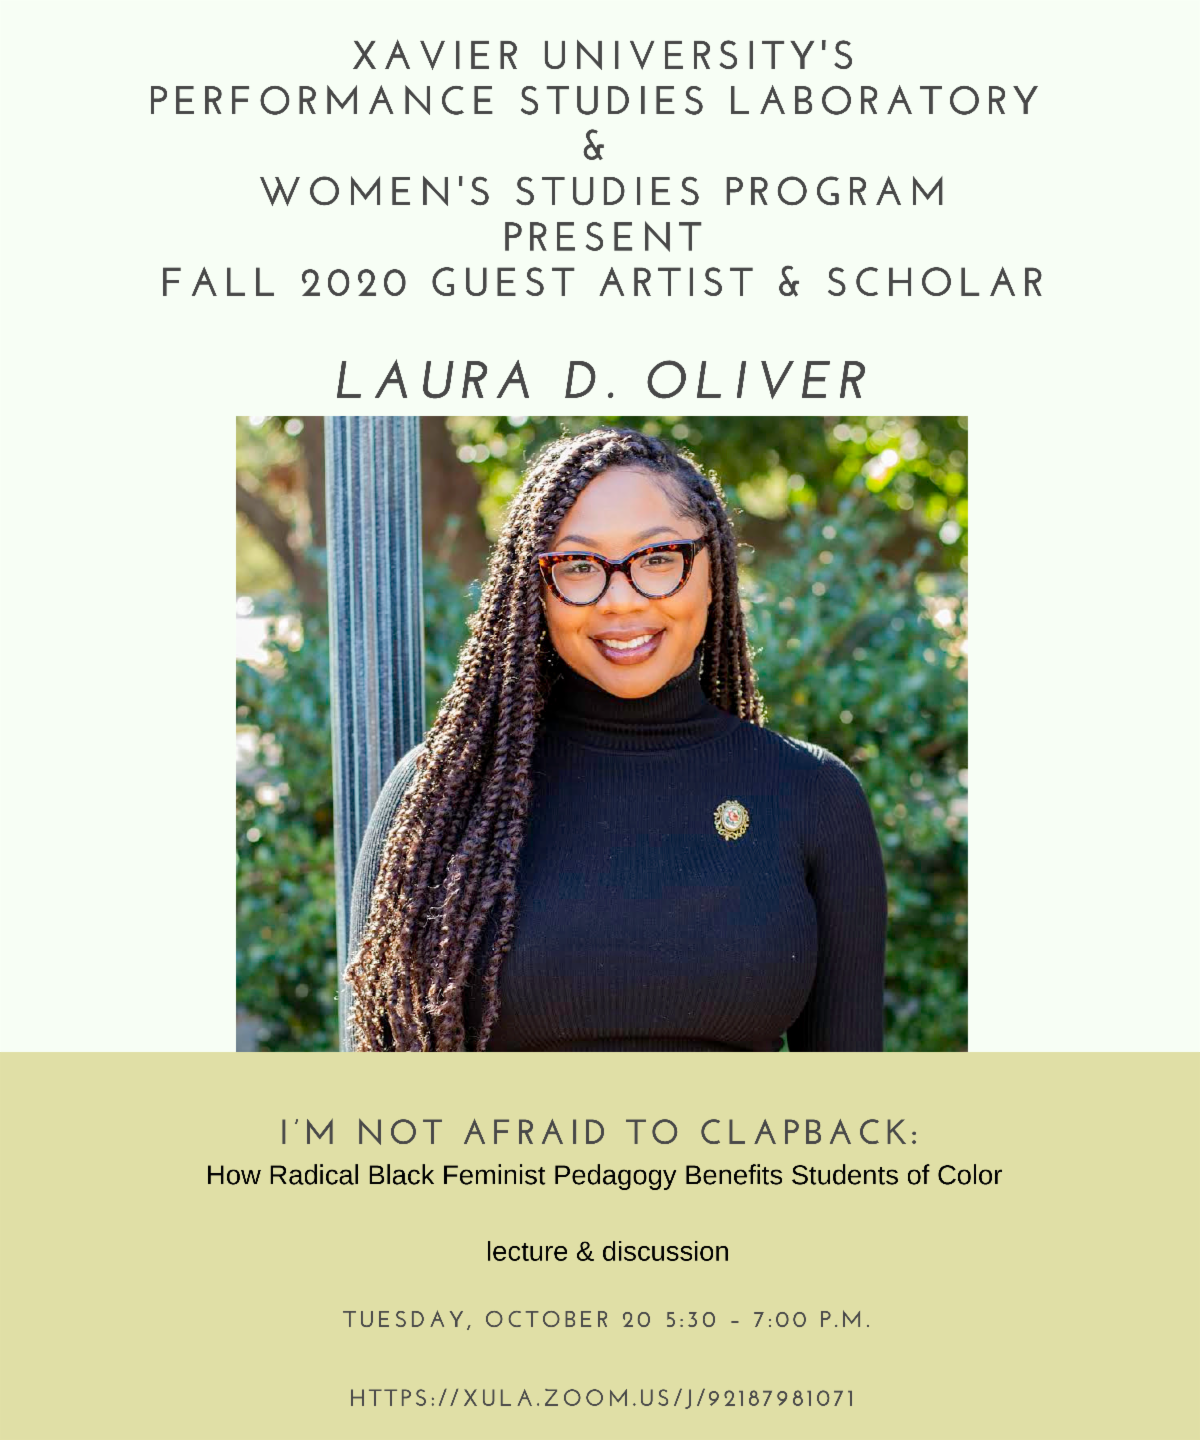 Laura D. Oliver - Radical Black Feminist Pedagogy